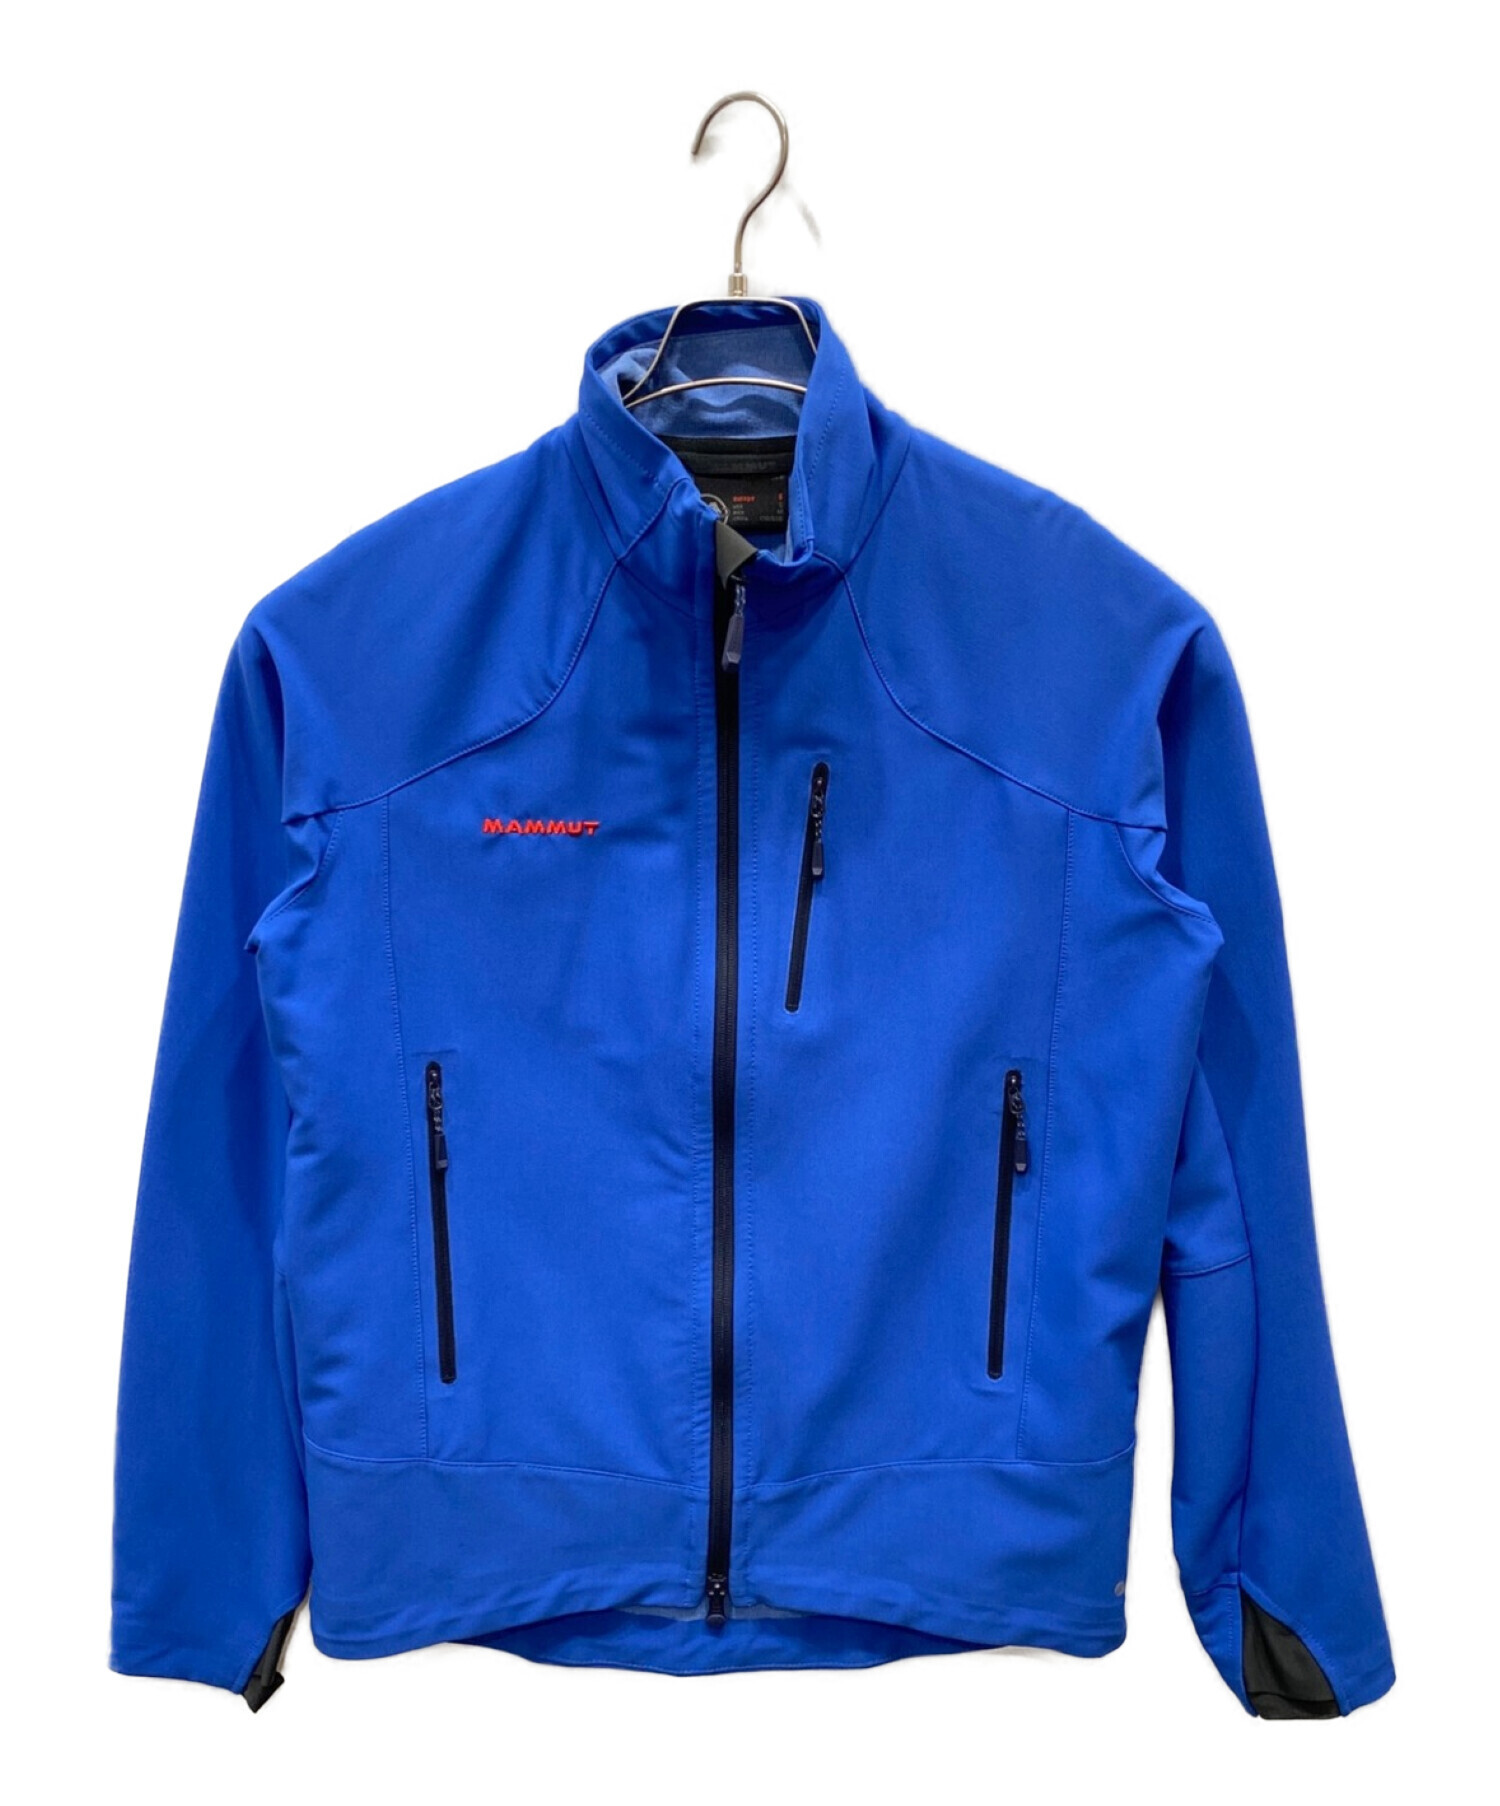 MAMMUT (マムート) Climb Jacket/クライムジャケット ブルー サイズ:M